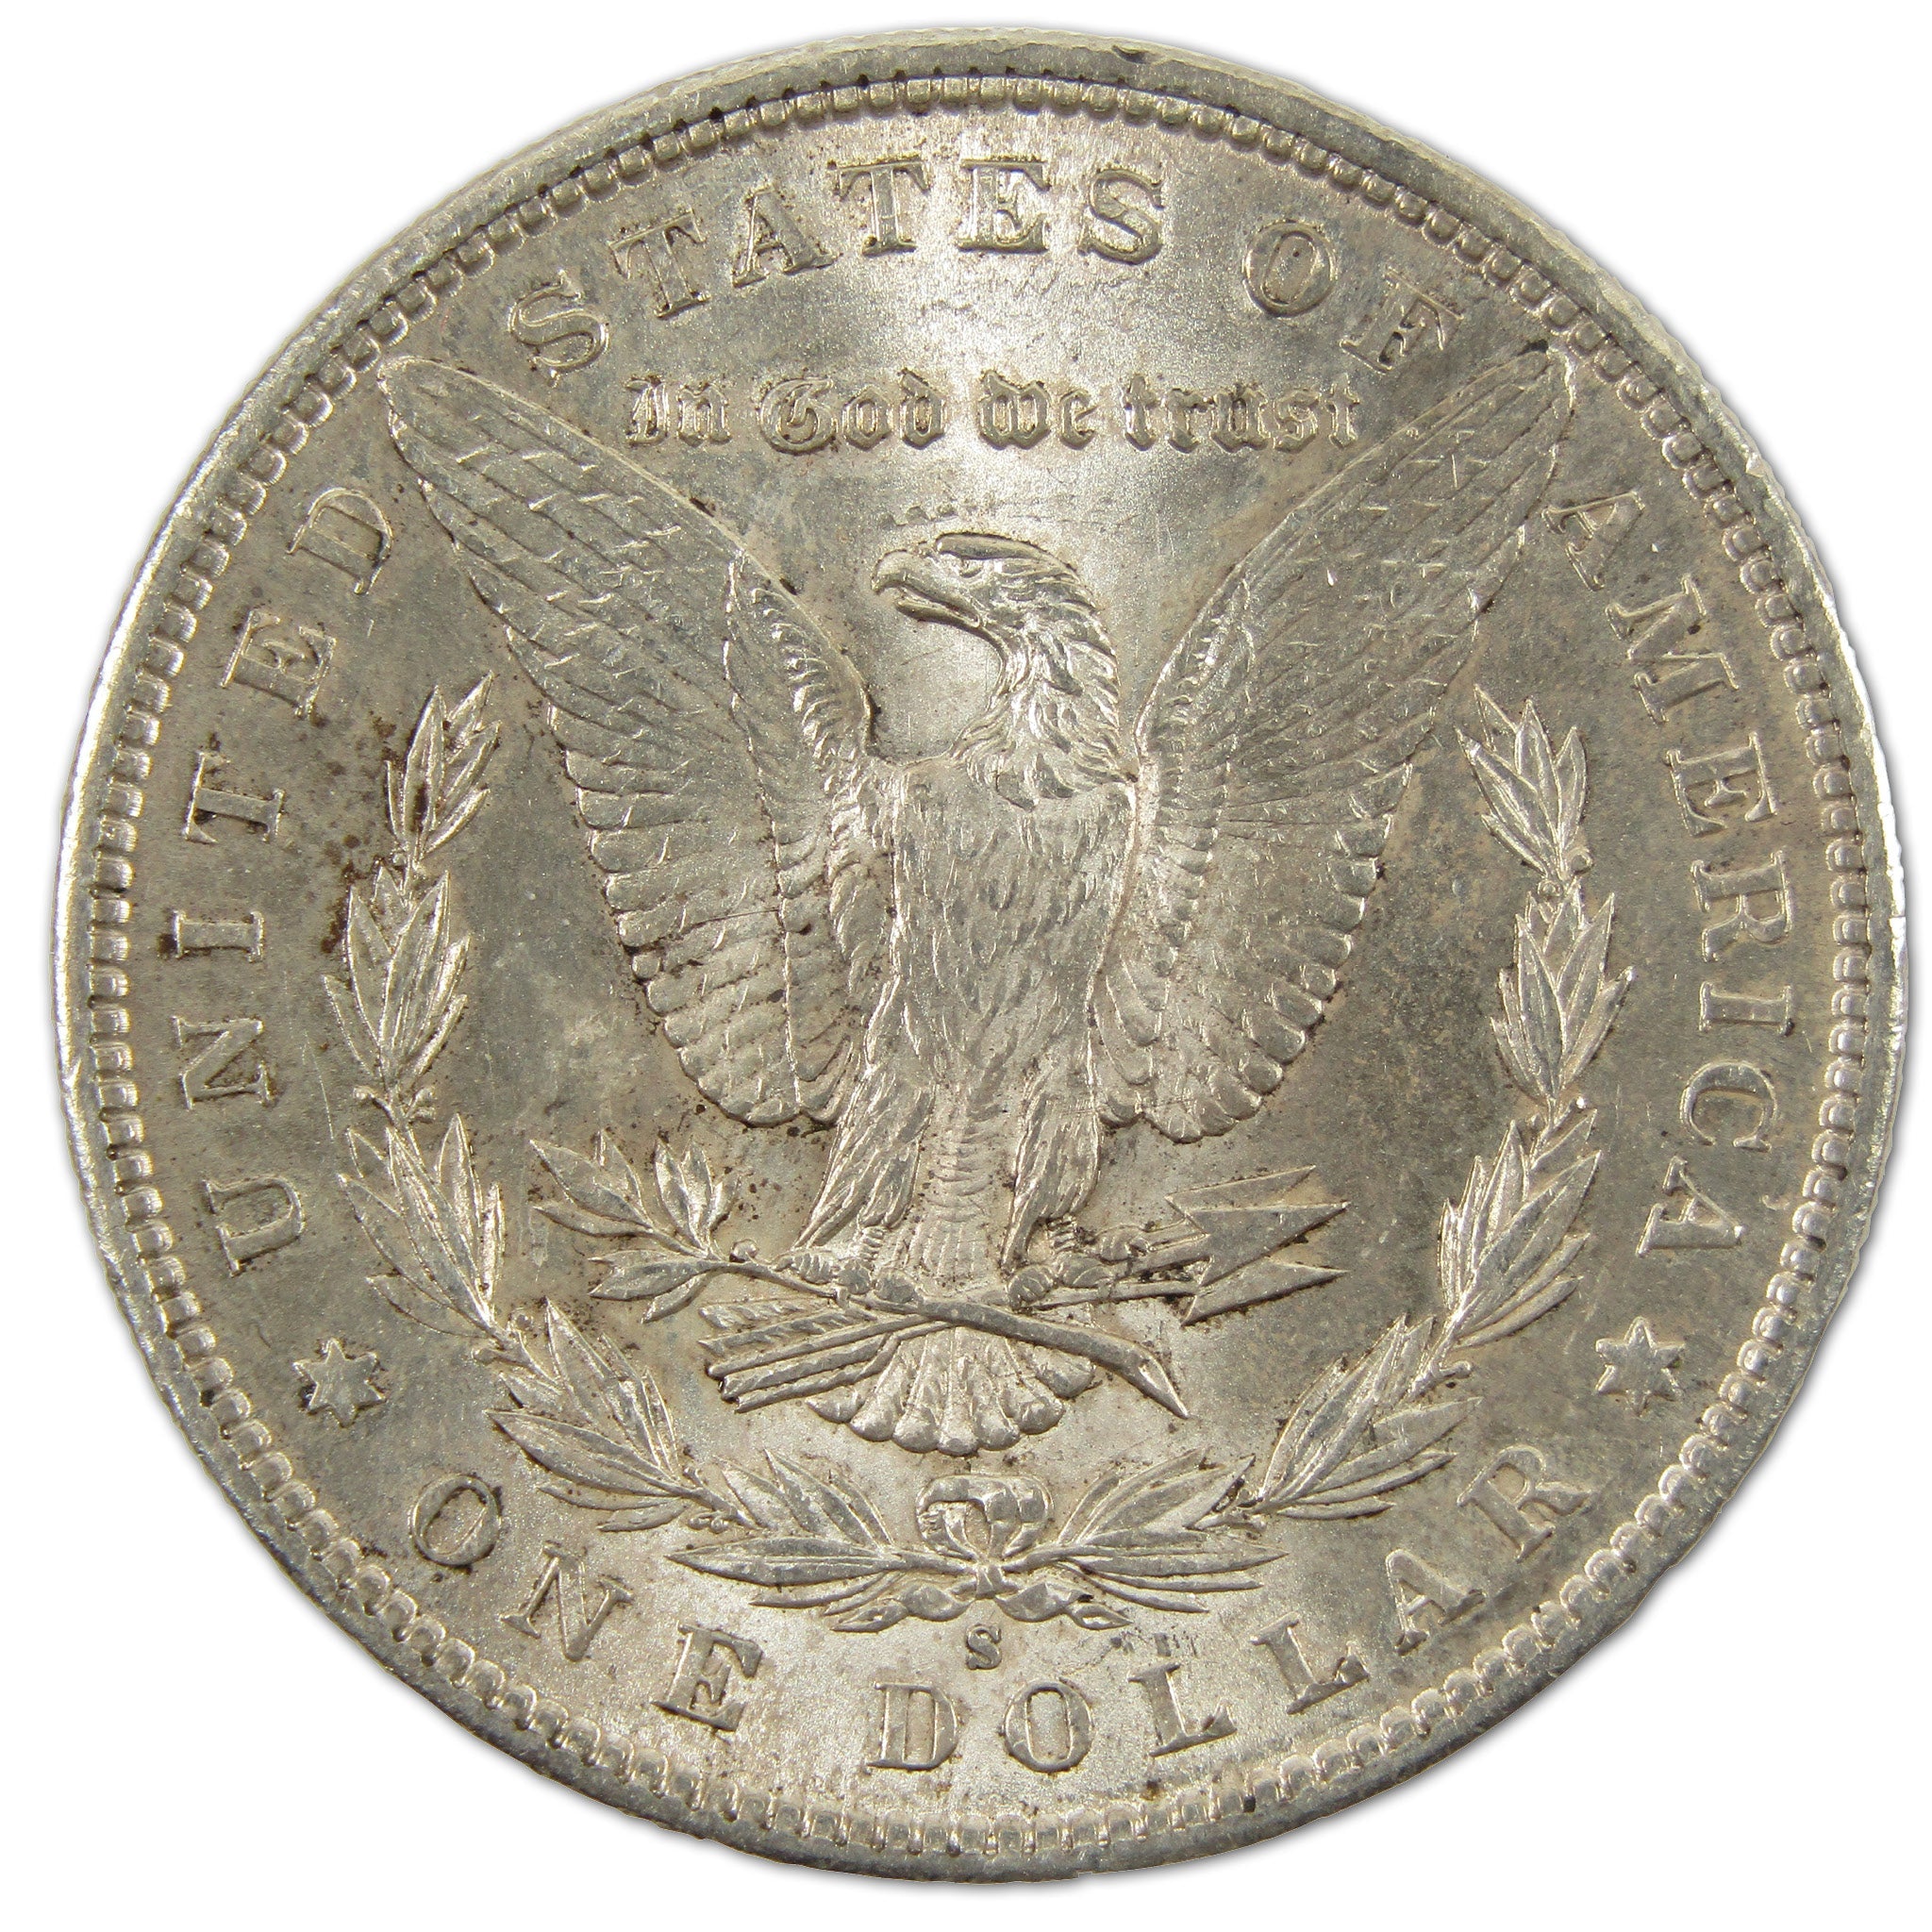 1891 S Morgan Dollar Borderline Uncirculated Silver $1 Coin SKU:I10754 - Morgan coin - Morgan silver dollar - Morgan silver dollar for sale - Profile Coins &amp; Collectibles